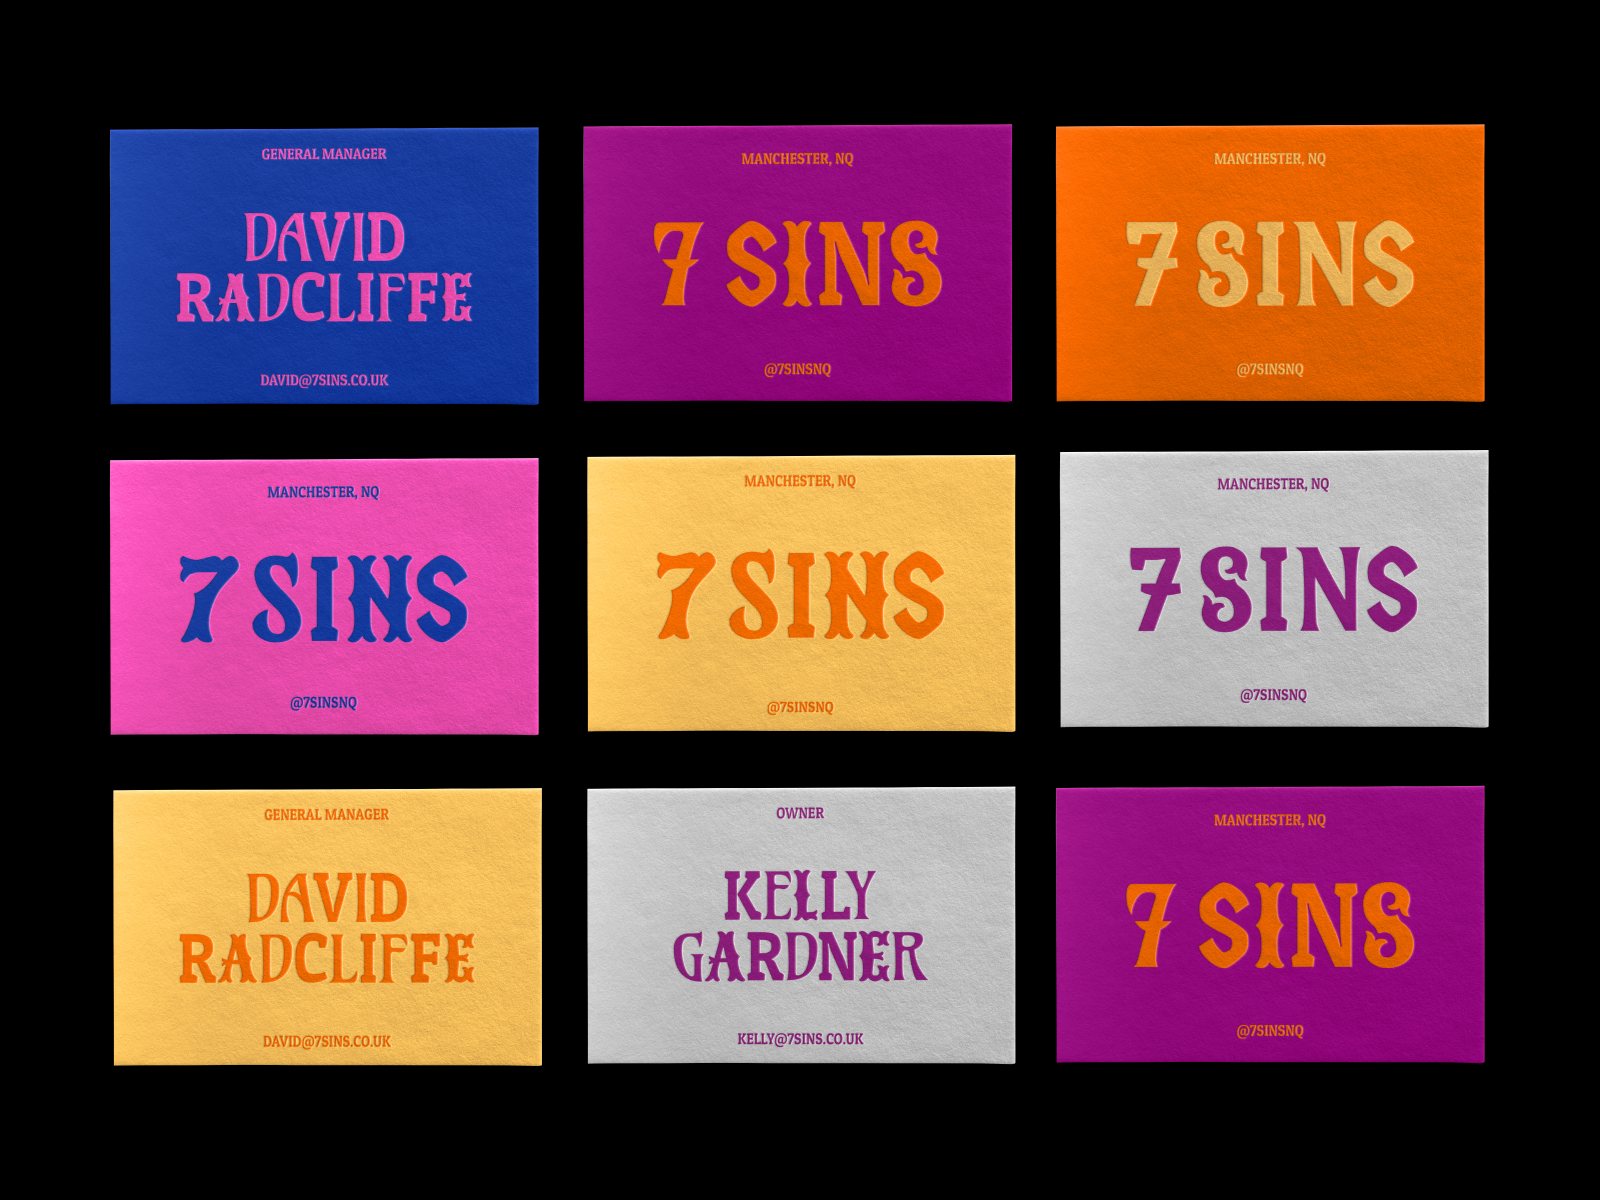 7 sins colors